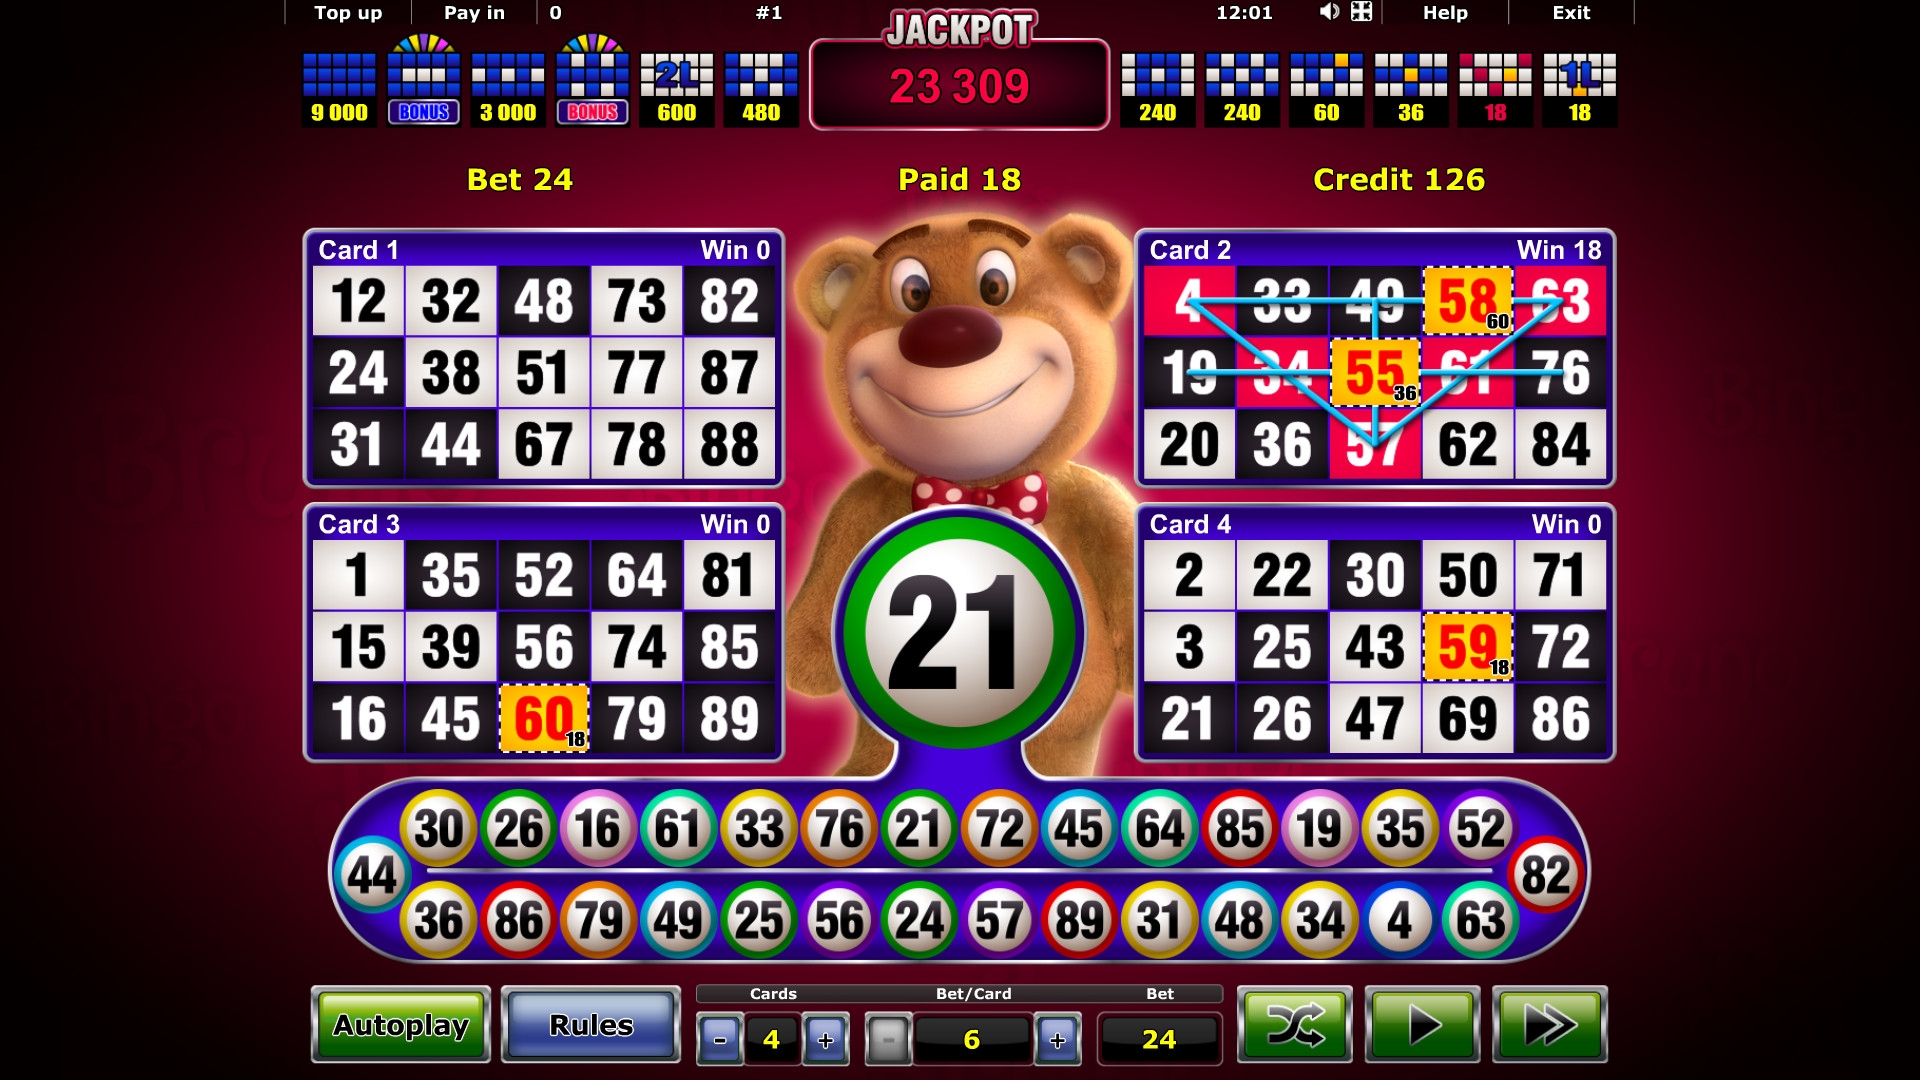 bonus bingo casino